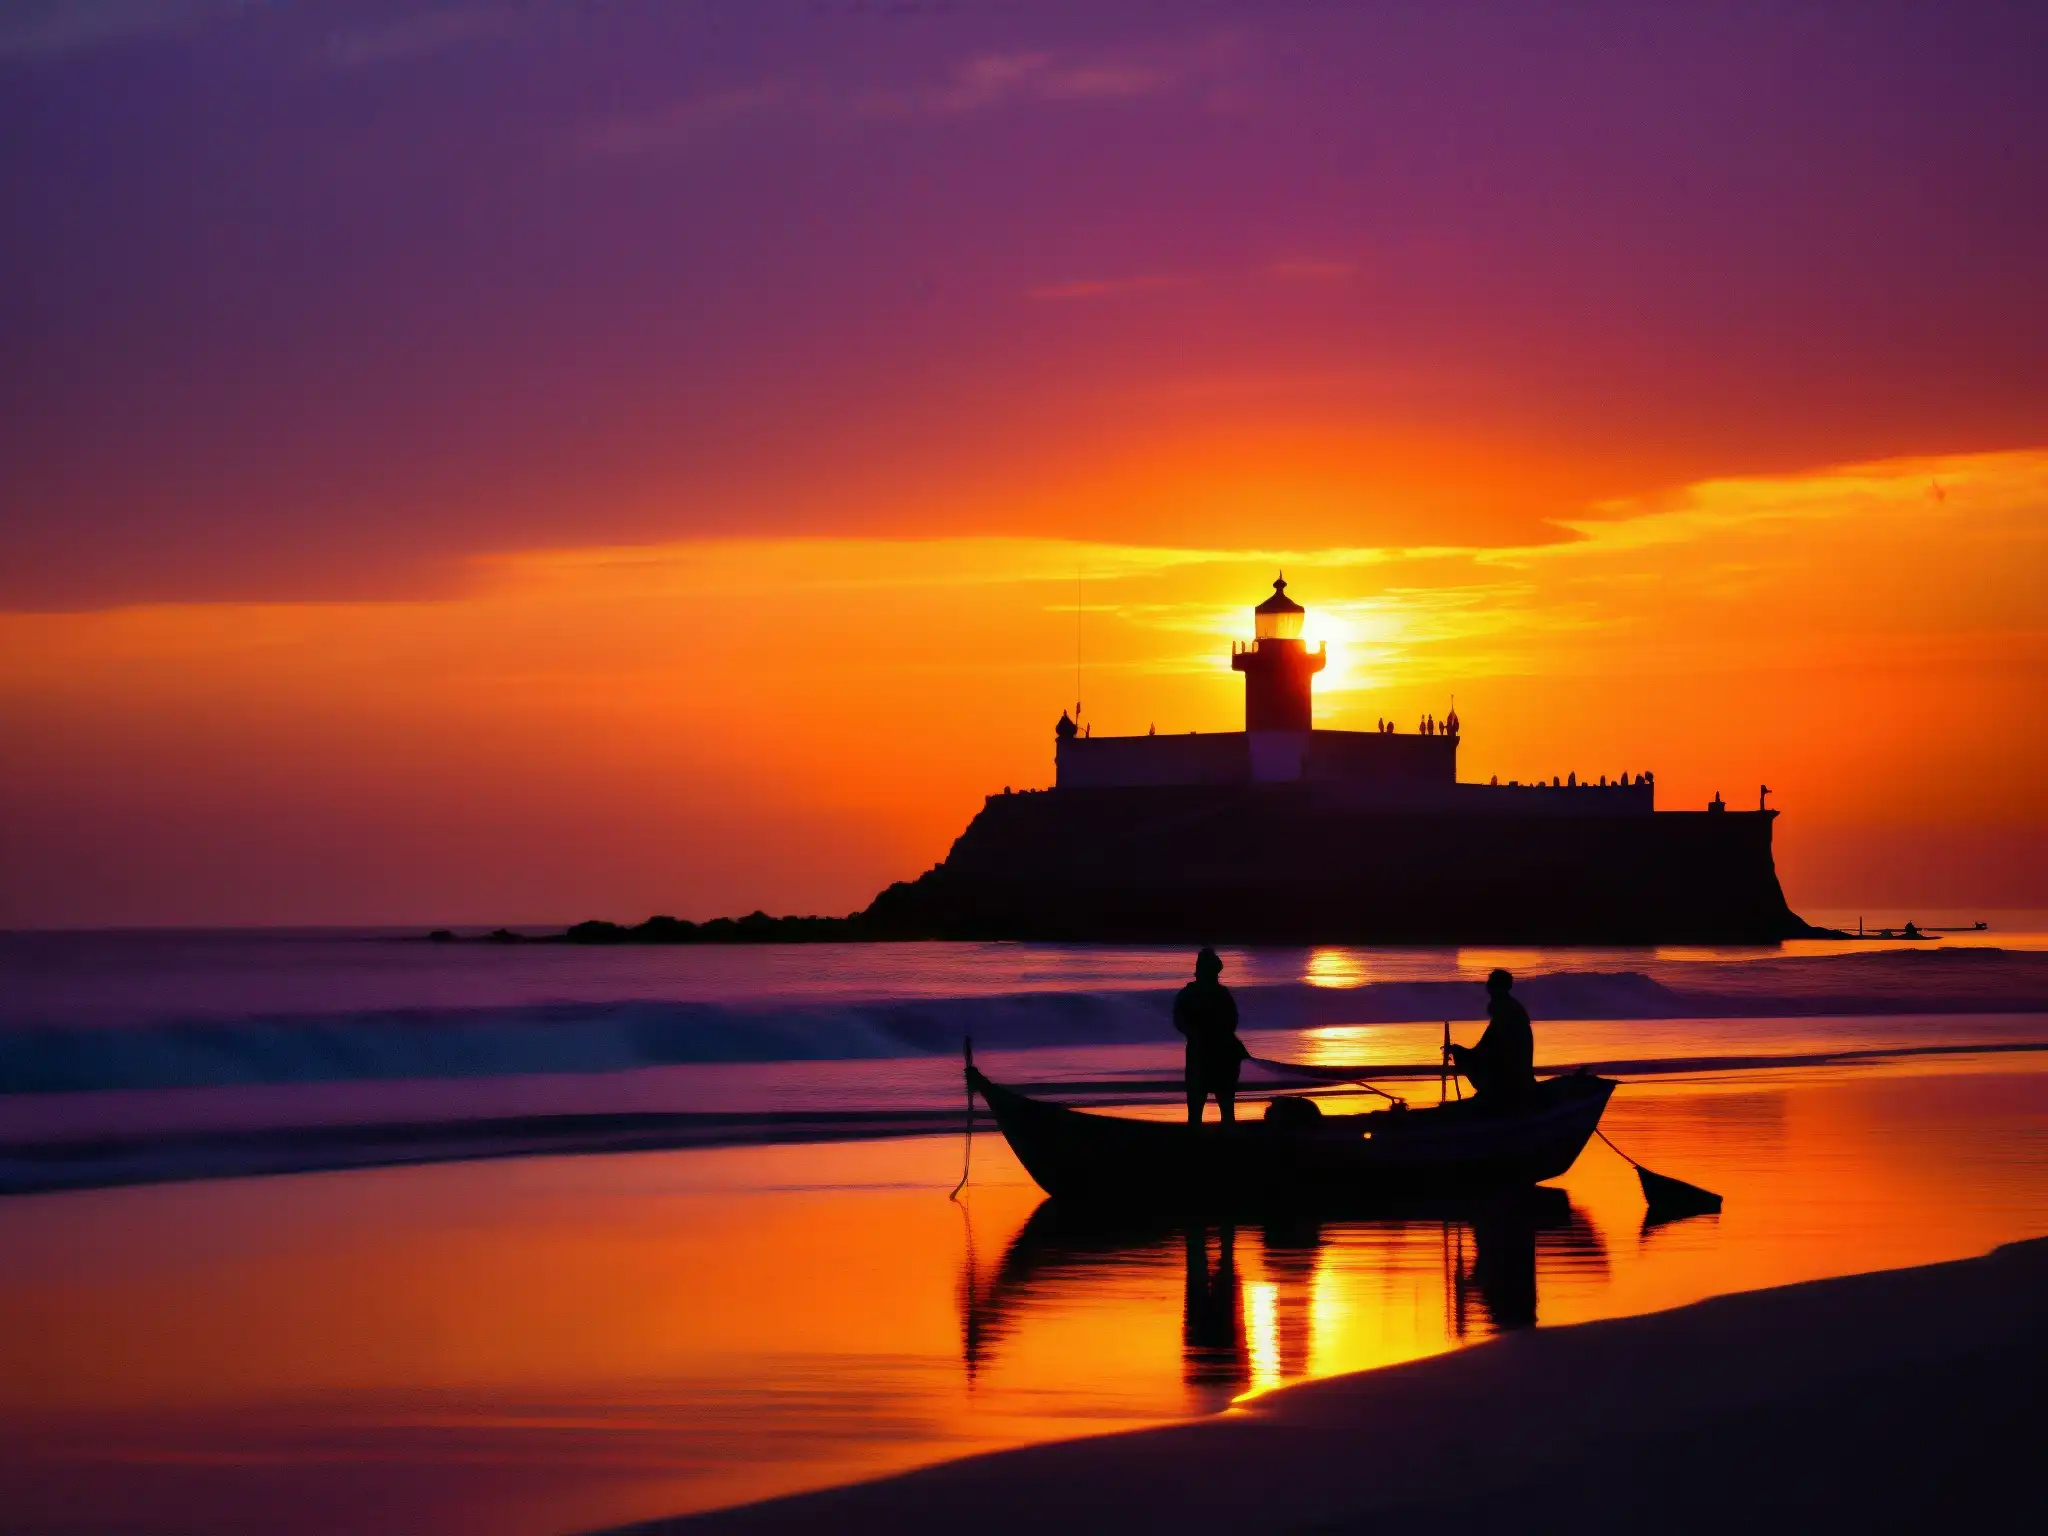 El sol se pone sobre la costa de Veracruz, destacando la silueta de un barco de pesca y su tripulación